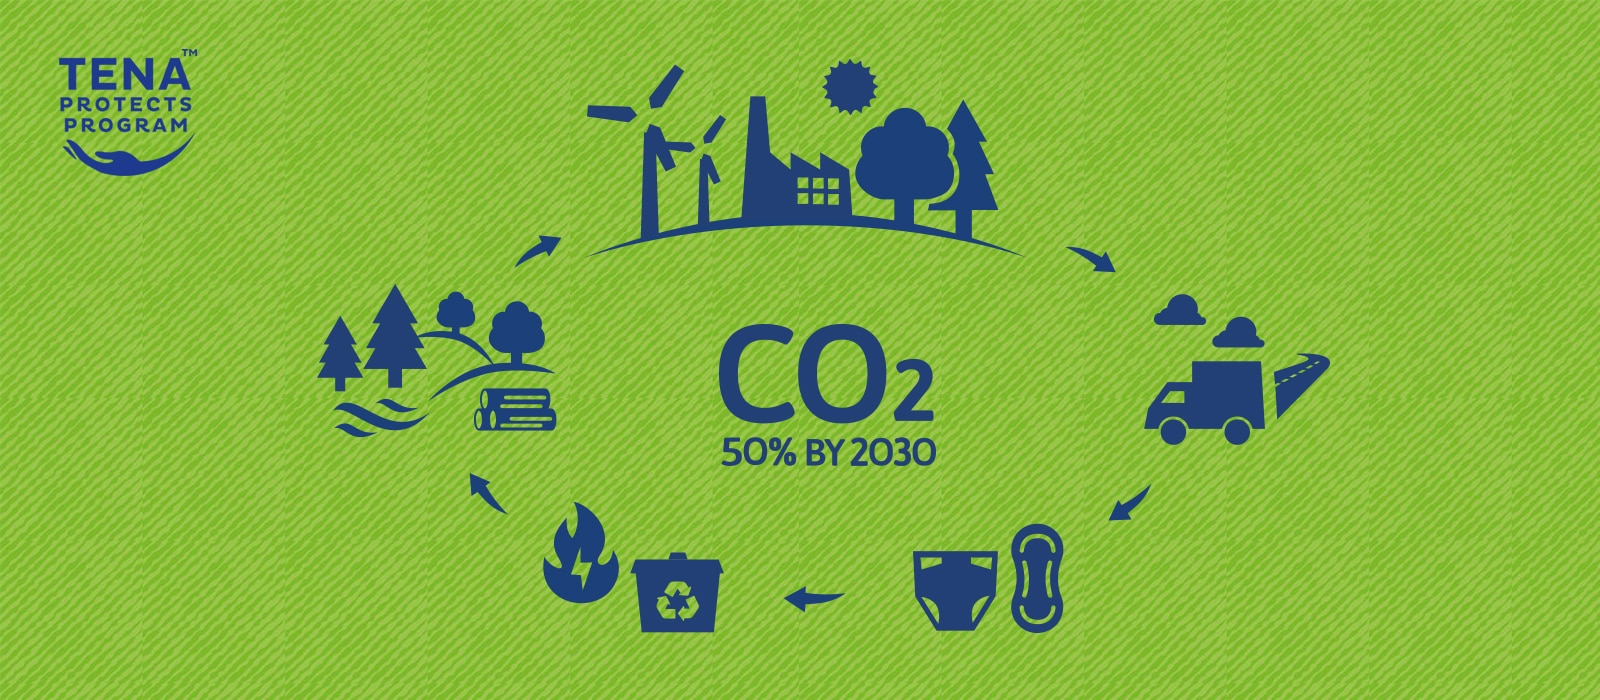 TENA Protects Programのロゴの横に、製品のライフサイクルの各段階を示すアイコンが、"2030年までにCO2を50%削減 "という文章を囲んでいる。